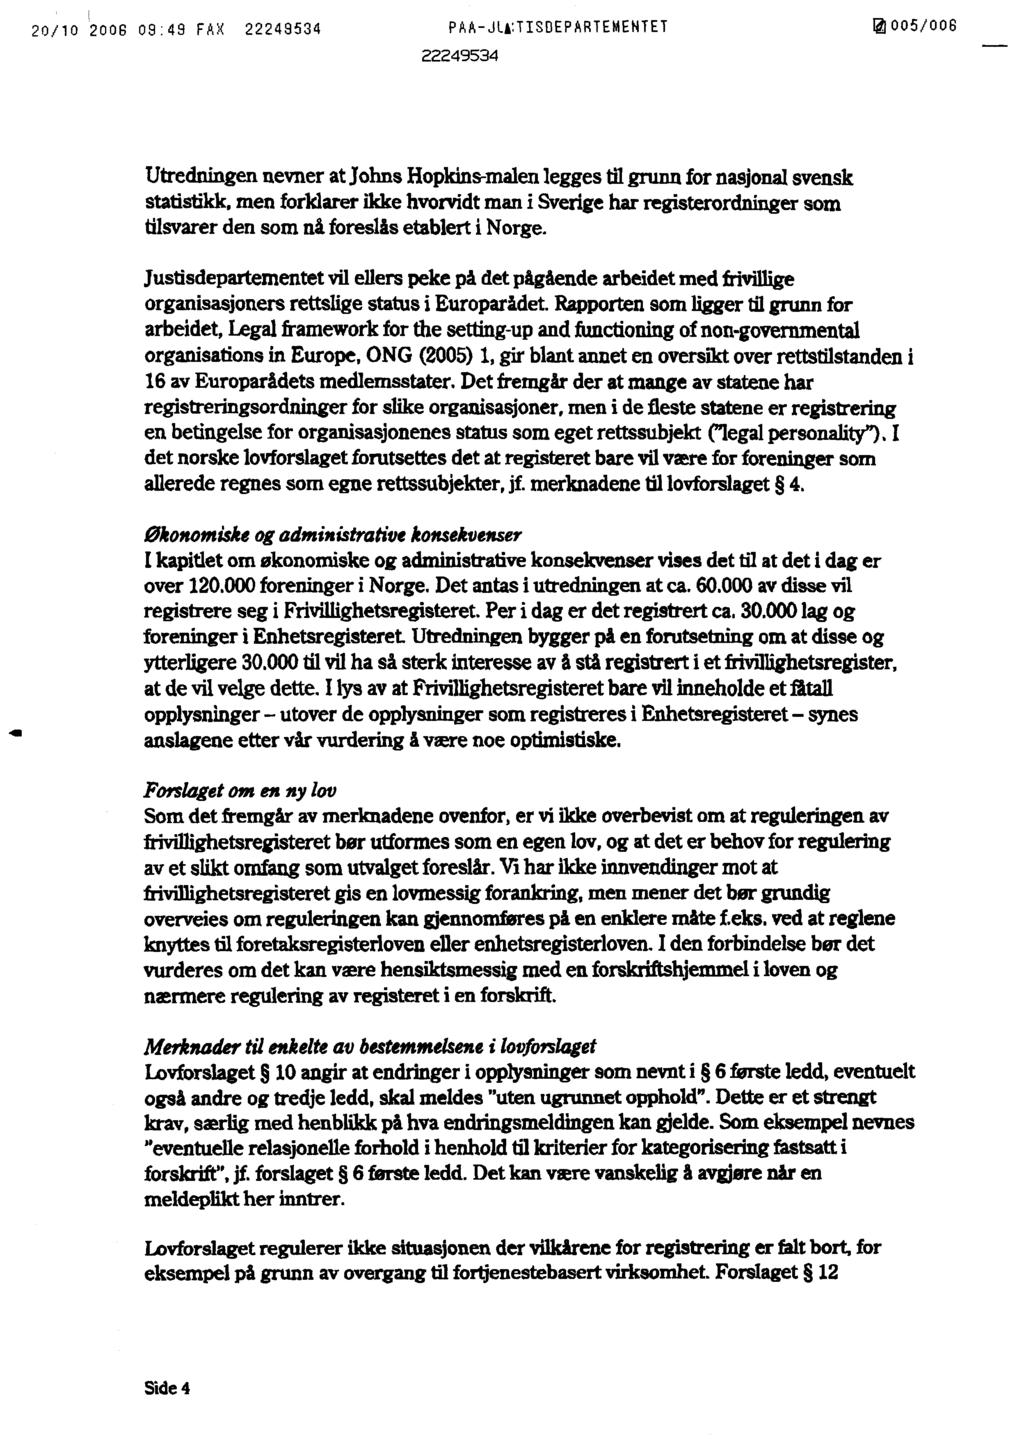 20/10 2006 09:49 FAX PAA-JIå,TISDEPARTEMENTET 16003/008 Utredningen nevner at Johns Hopkins-malen legges til grunn for nasjonal svensk statistikk, men forklarer ikke hvorvidt man i Sverige har